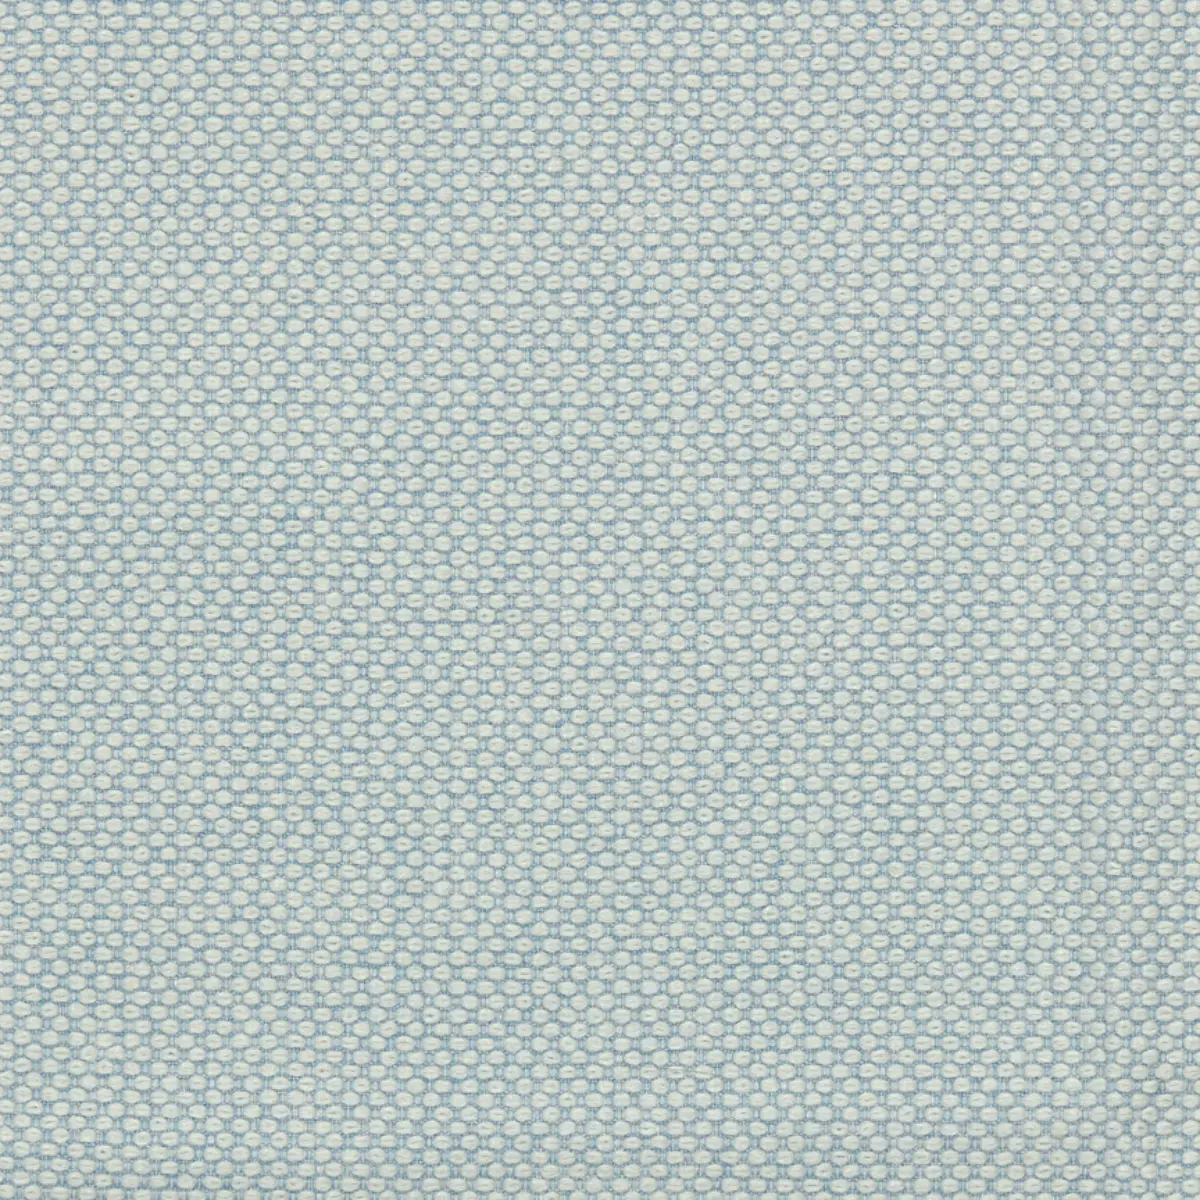 Fabric sample Merit 0010 multicolour